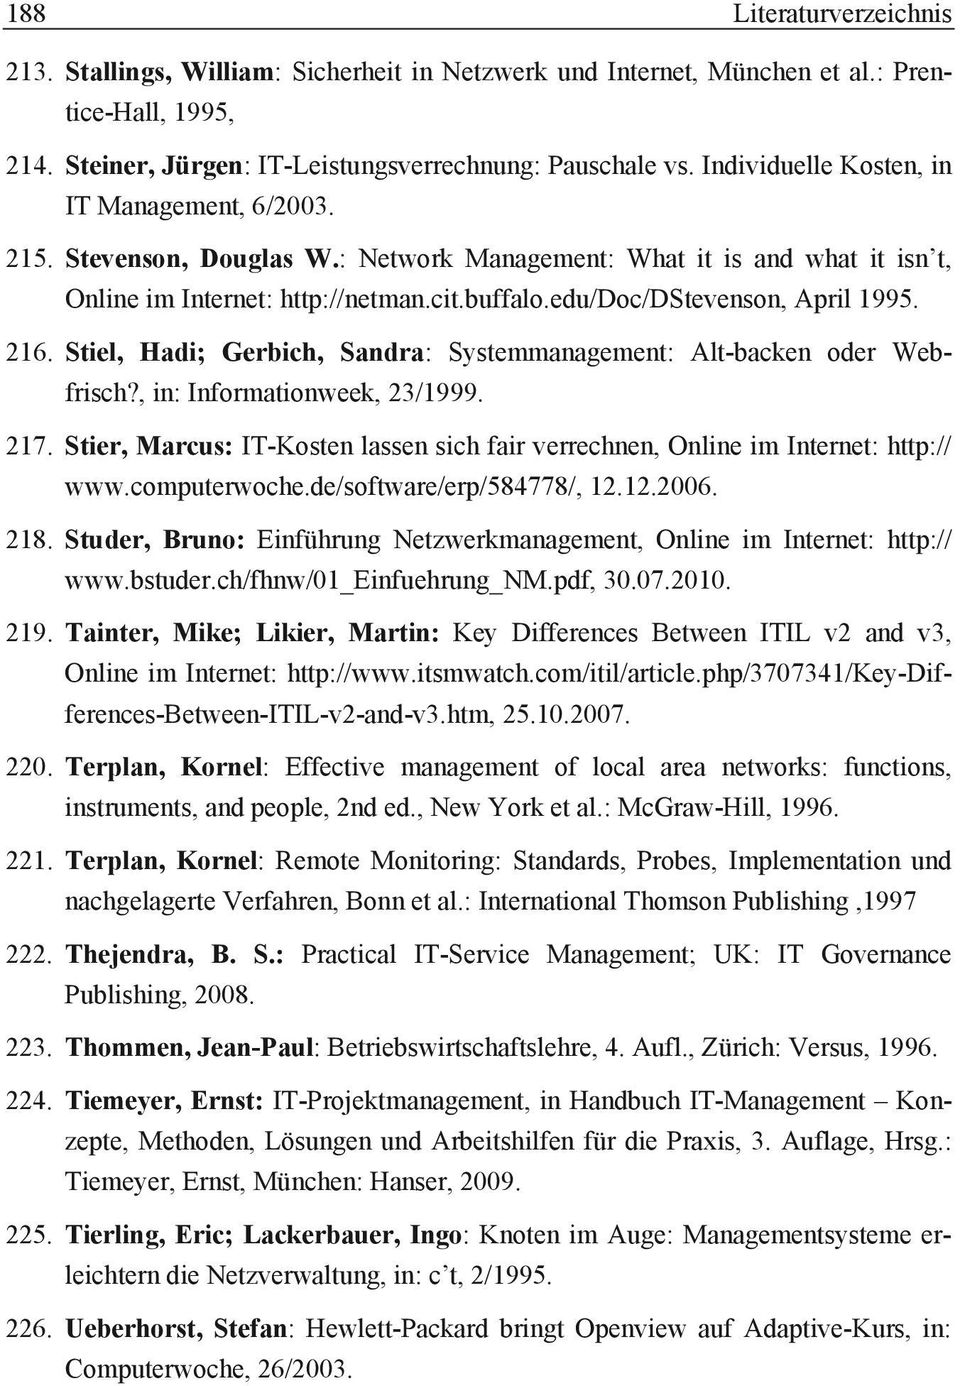 edu/doc/dstevenson, April 1995. 216. Stiel, Hadi; Gerbich, Sandra: Systemmanagement: Alt-backen oder Webfrisch?, in: Informationweek, 23/1999. 217.